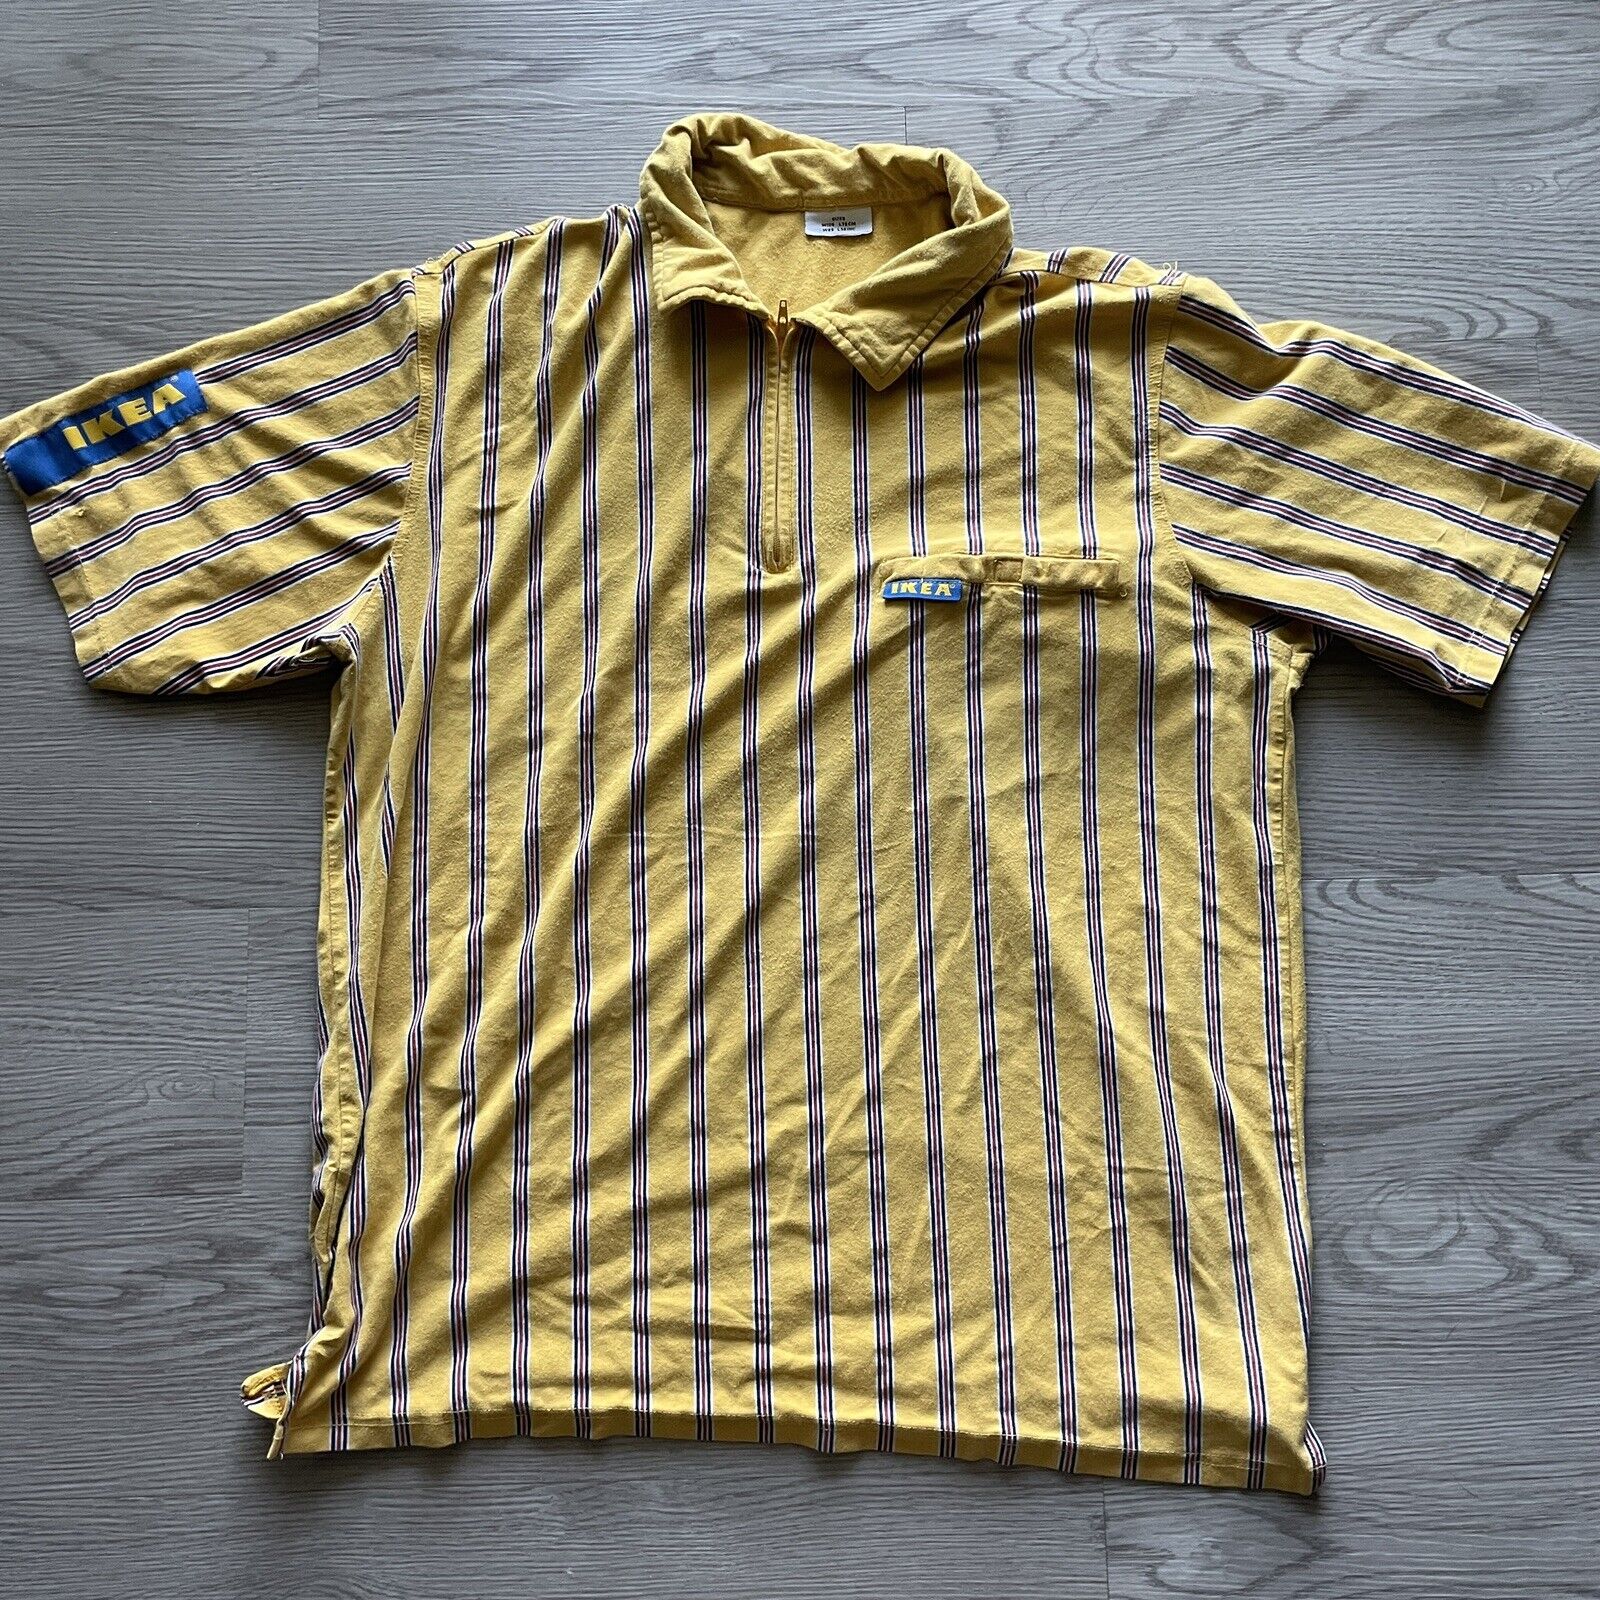 Oprechtheid Kast filosoof Men's Ikea Employee Staff Uniform Polo Work Shirt Yellow Blue Striped Sz  Small S | eBay